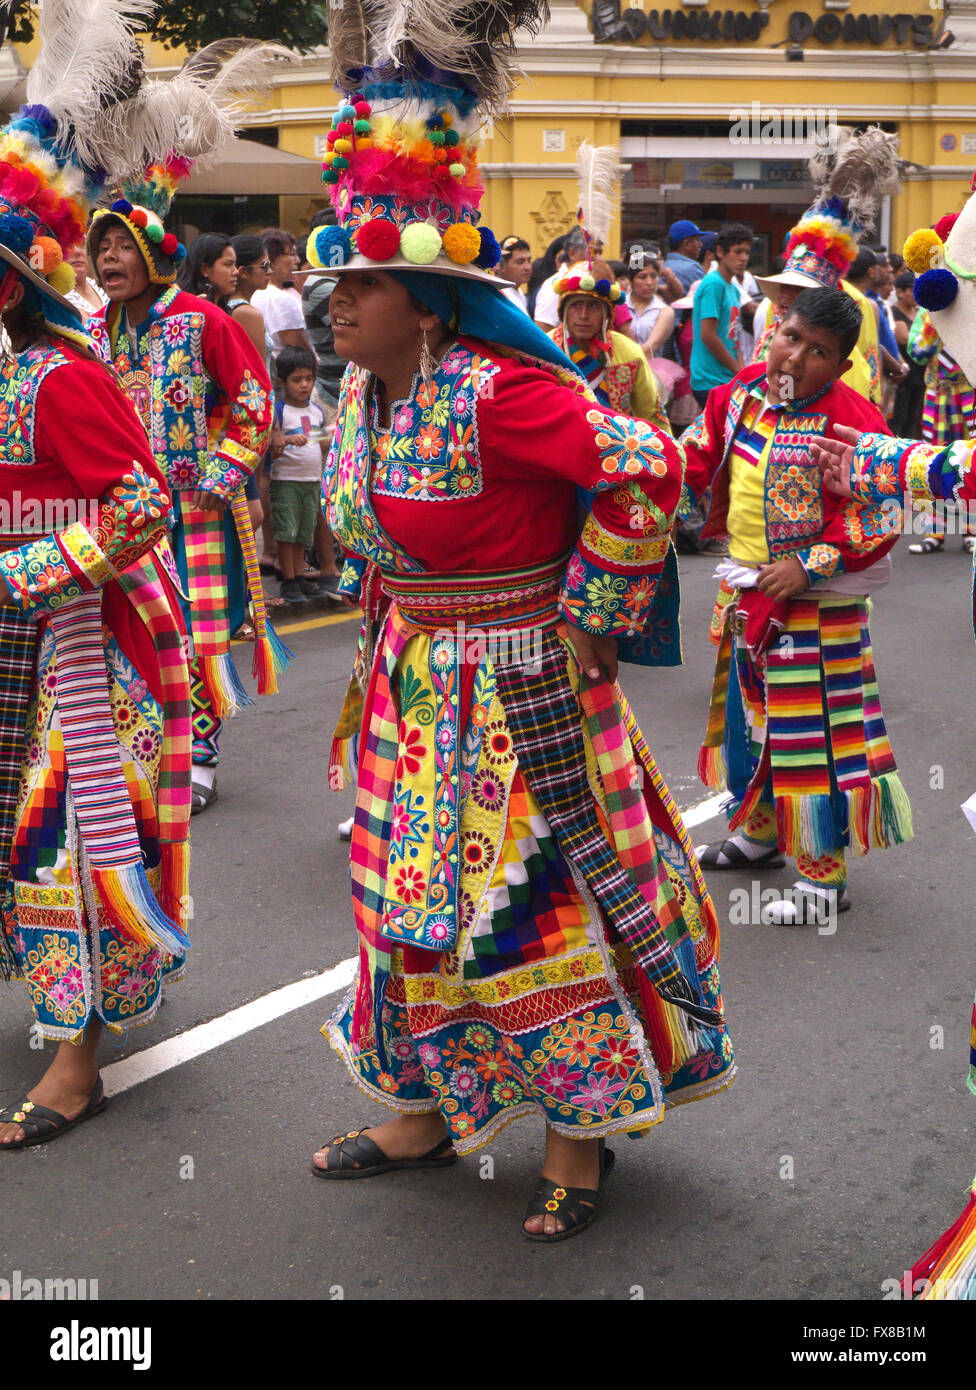 las-personas-en-traje-tradicional-peruano-bailando-en-las-calles-de-lima-fx8b1m.jpg